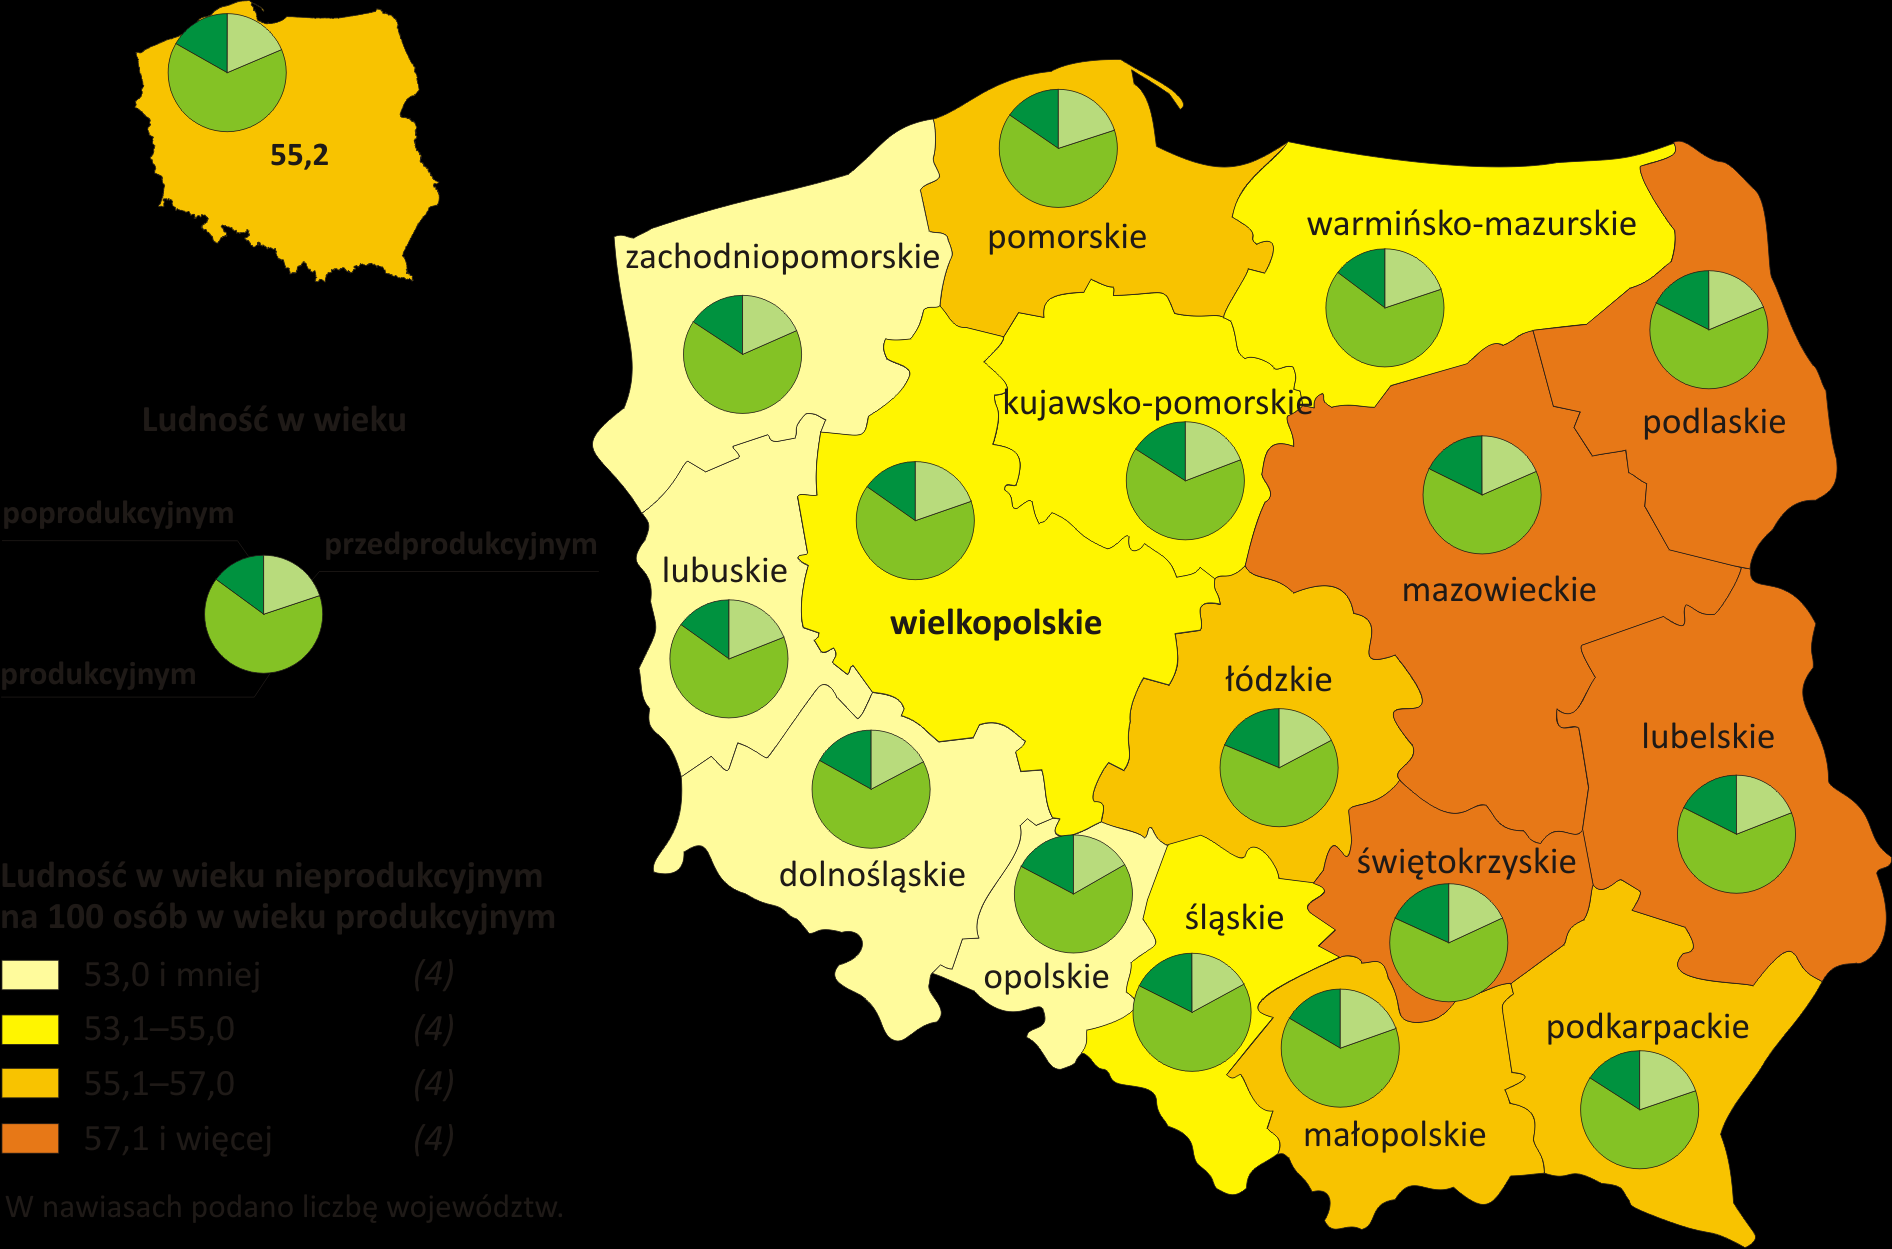 LUDNOŚĆ Gęstość zaludnienia i saldo migracji według województw w 2010 r.